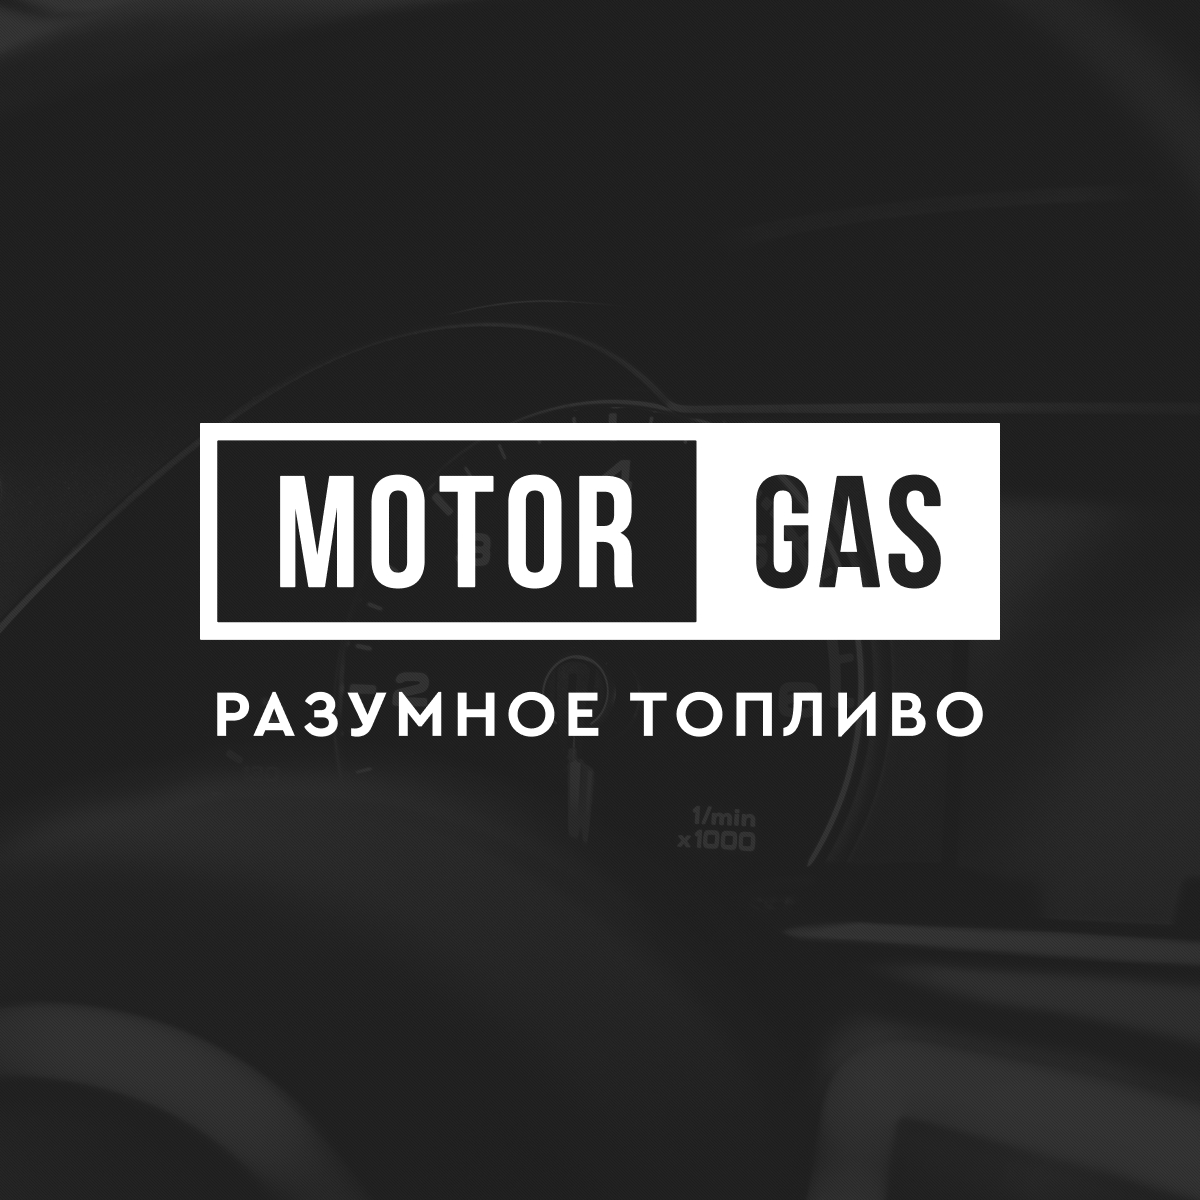 www.motor-gas.ua